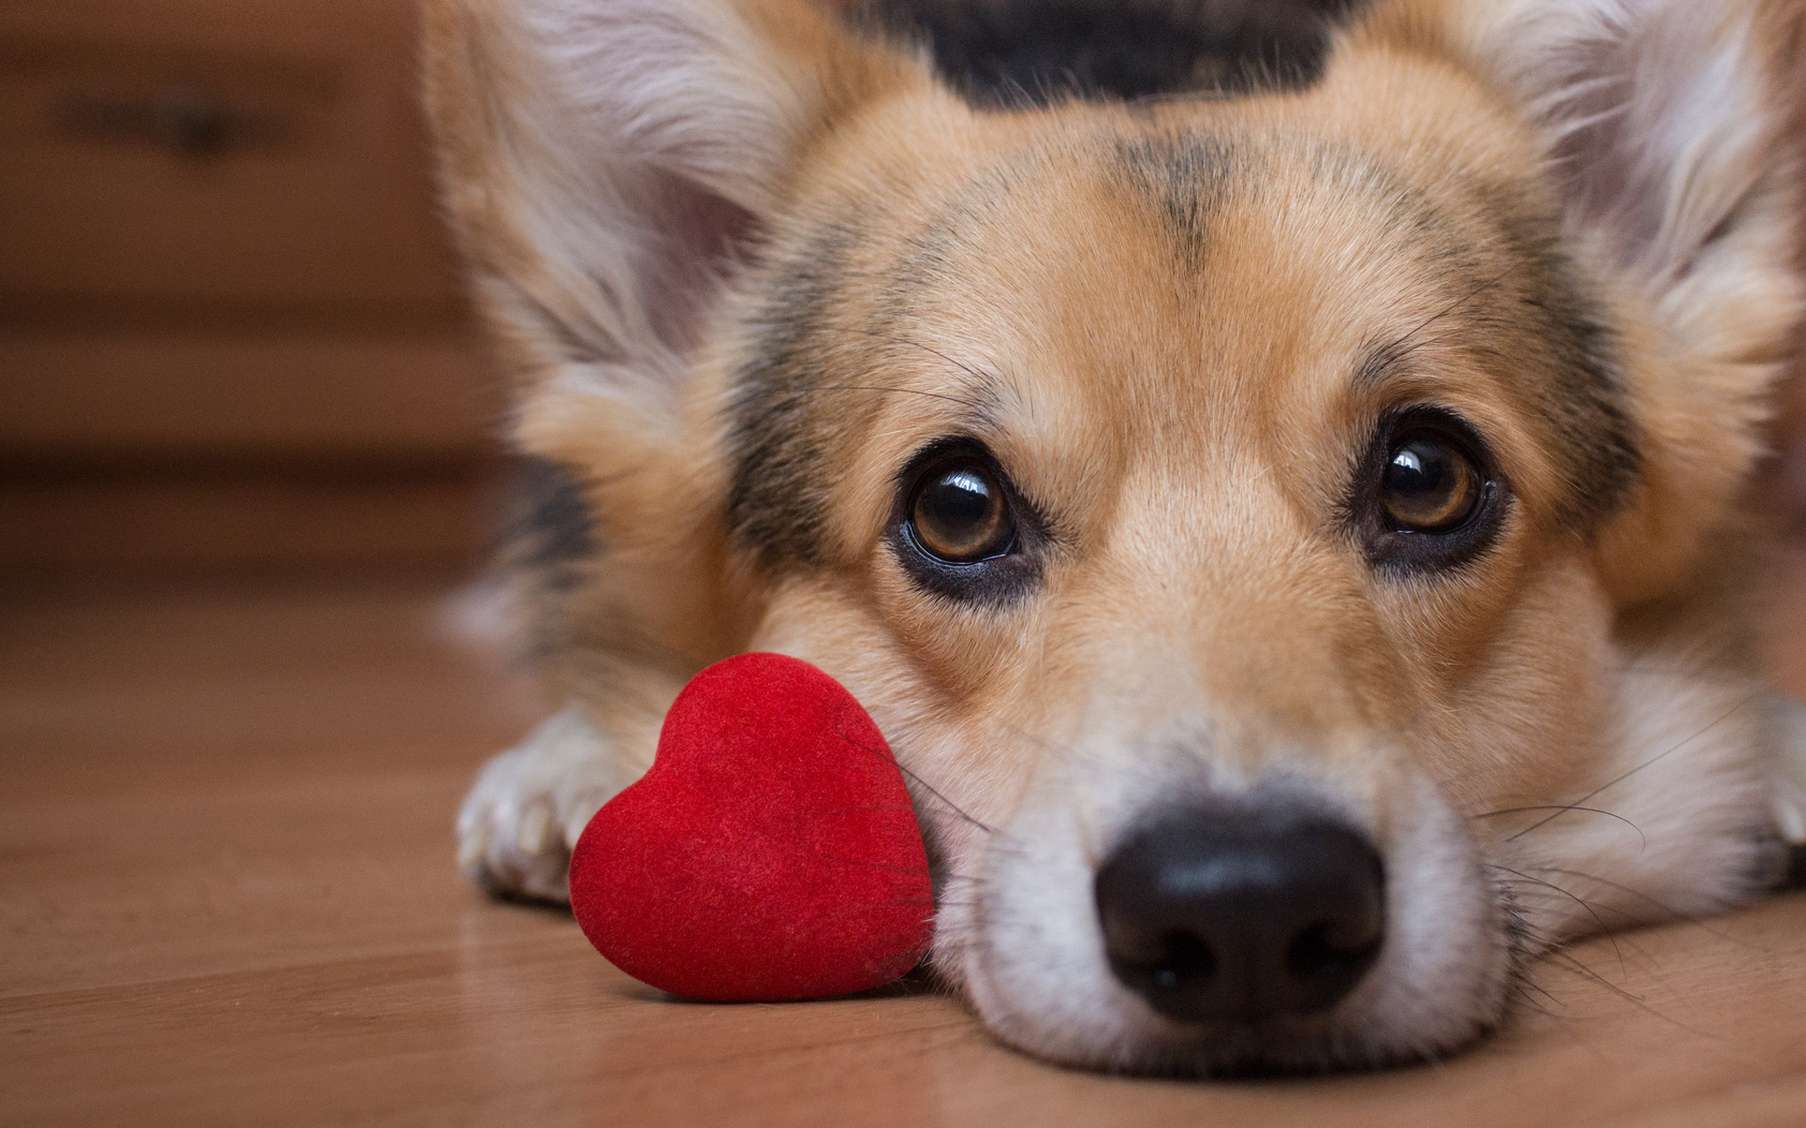 Avoir un chien réduit les risques de maladies cardiovasculaires